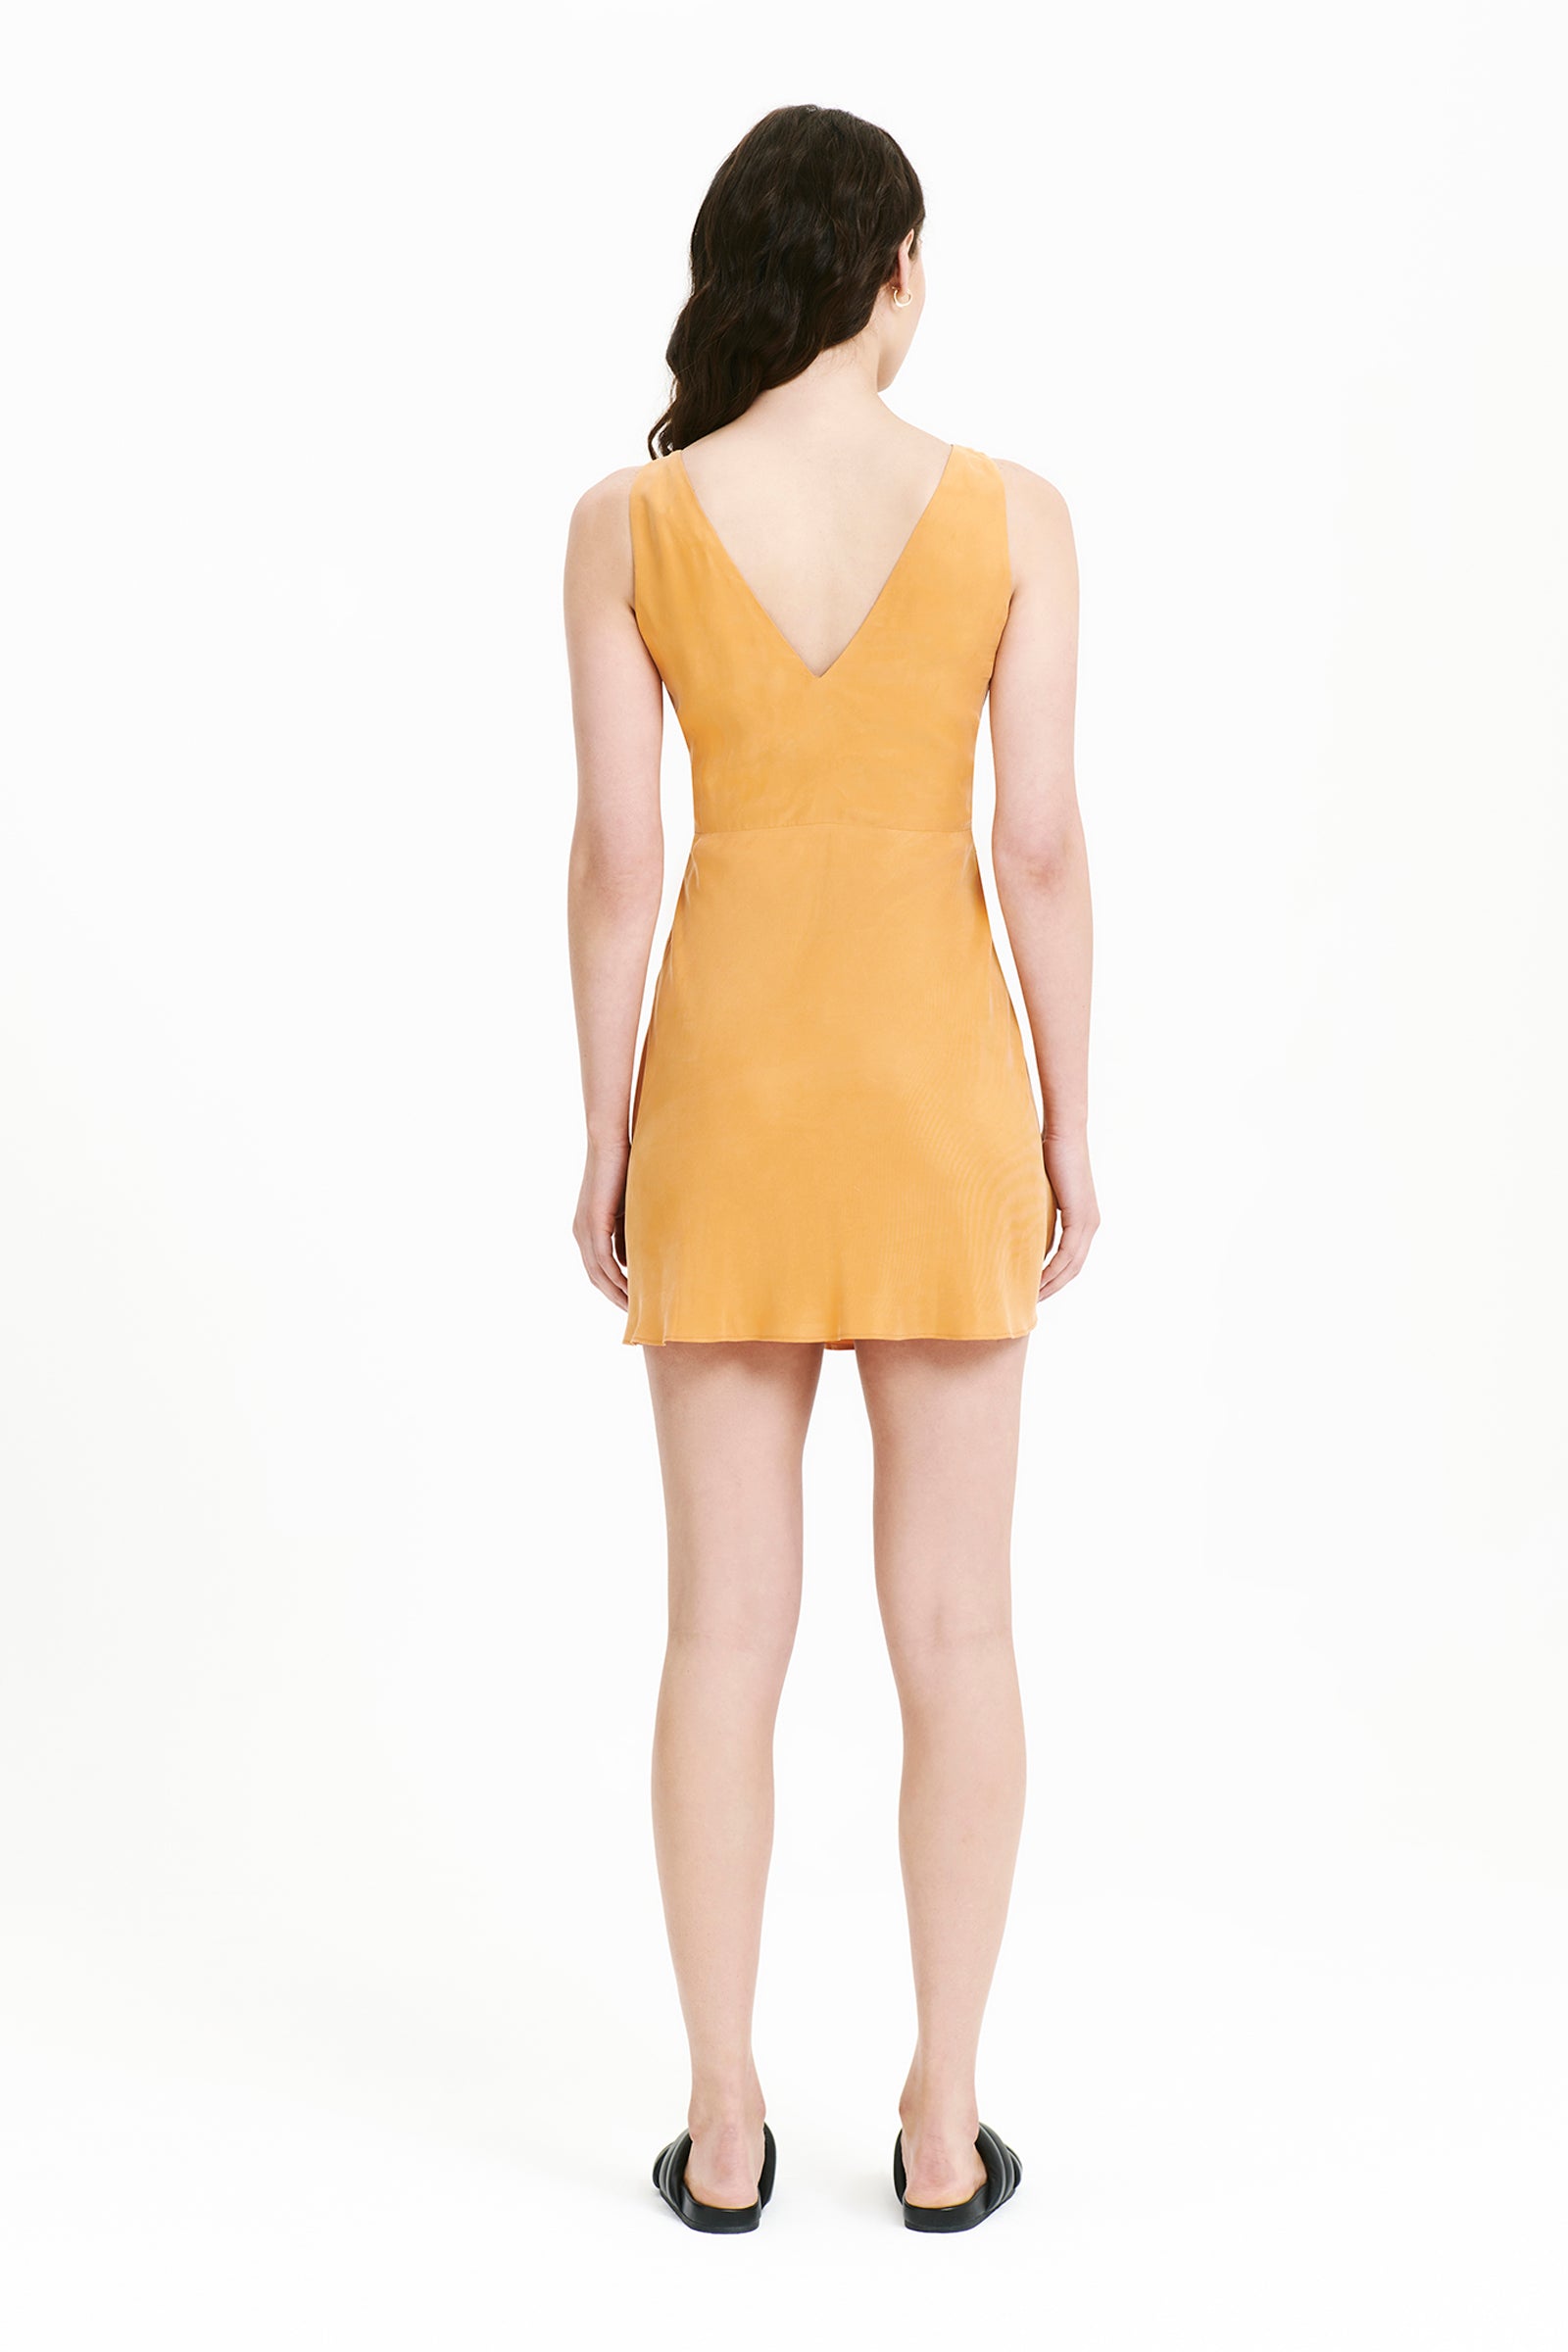 Nude Lucy Reese Cupro Mini Dress In an Orange Mandarin Colour